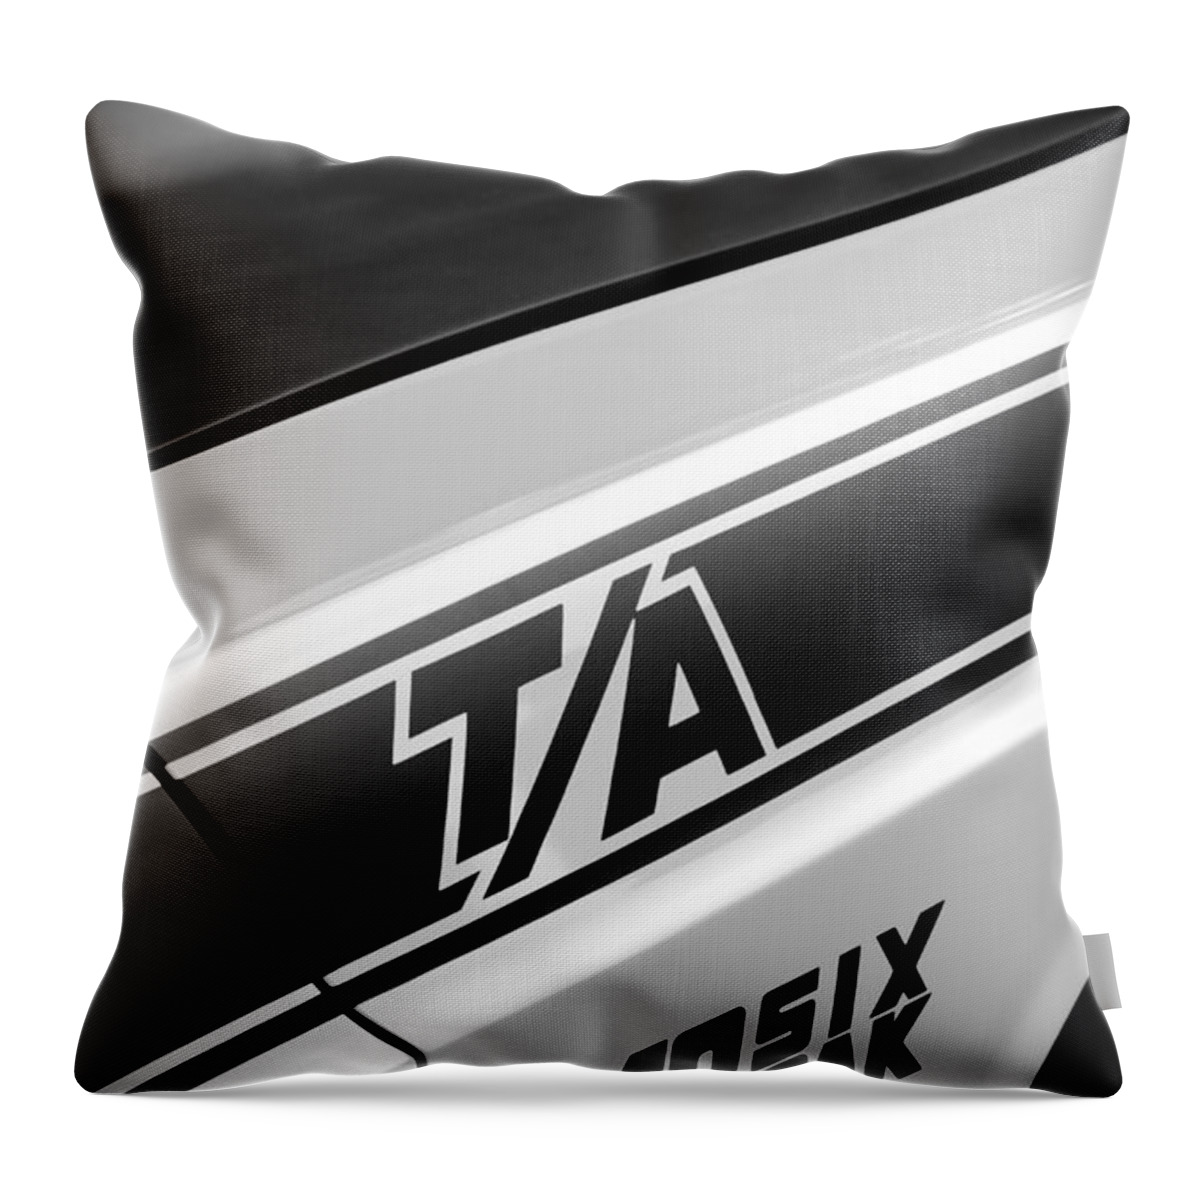 Dodge Throw Pillow featuring the digital art White TA by Gordon Dean II